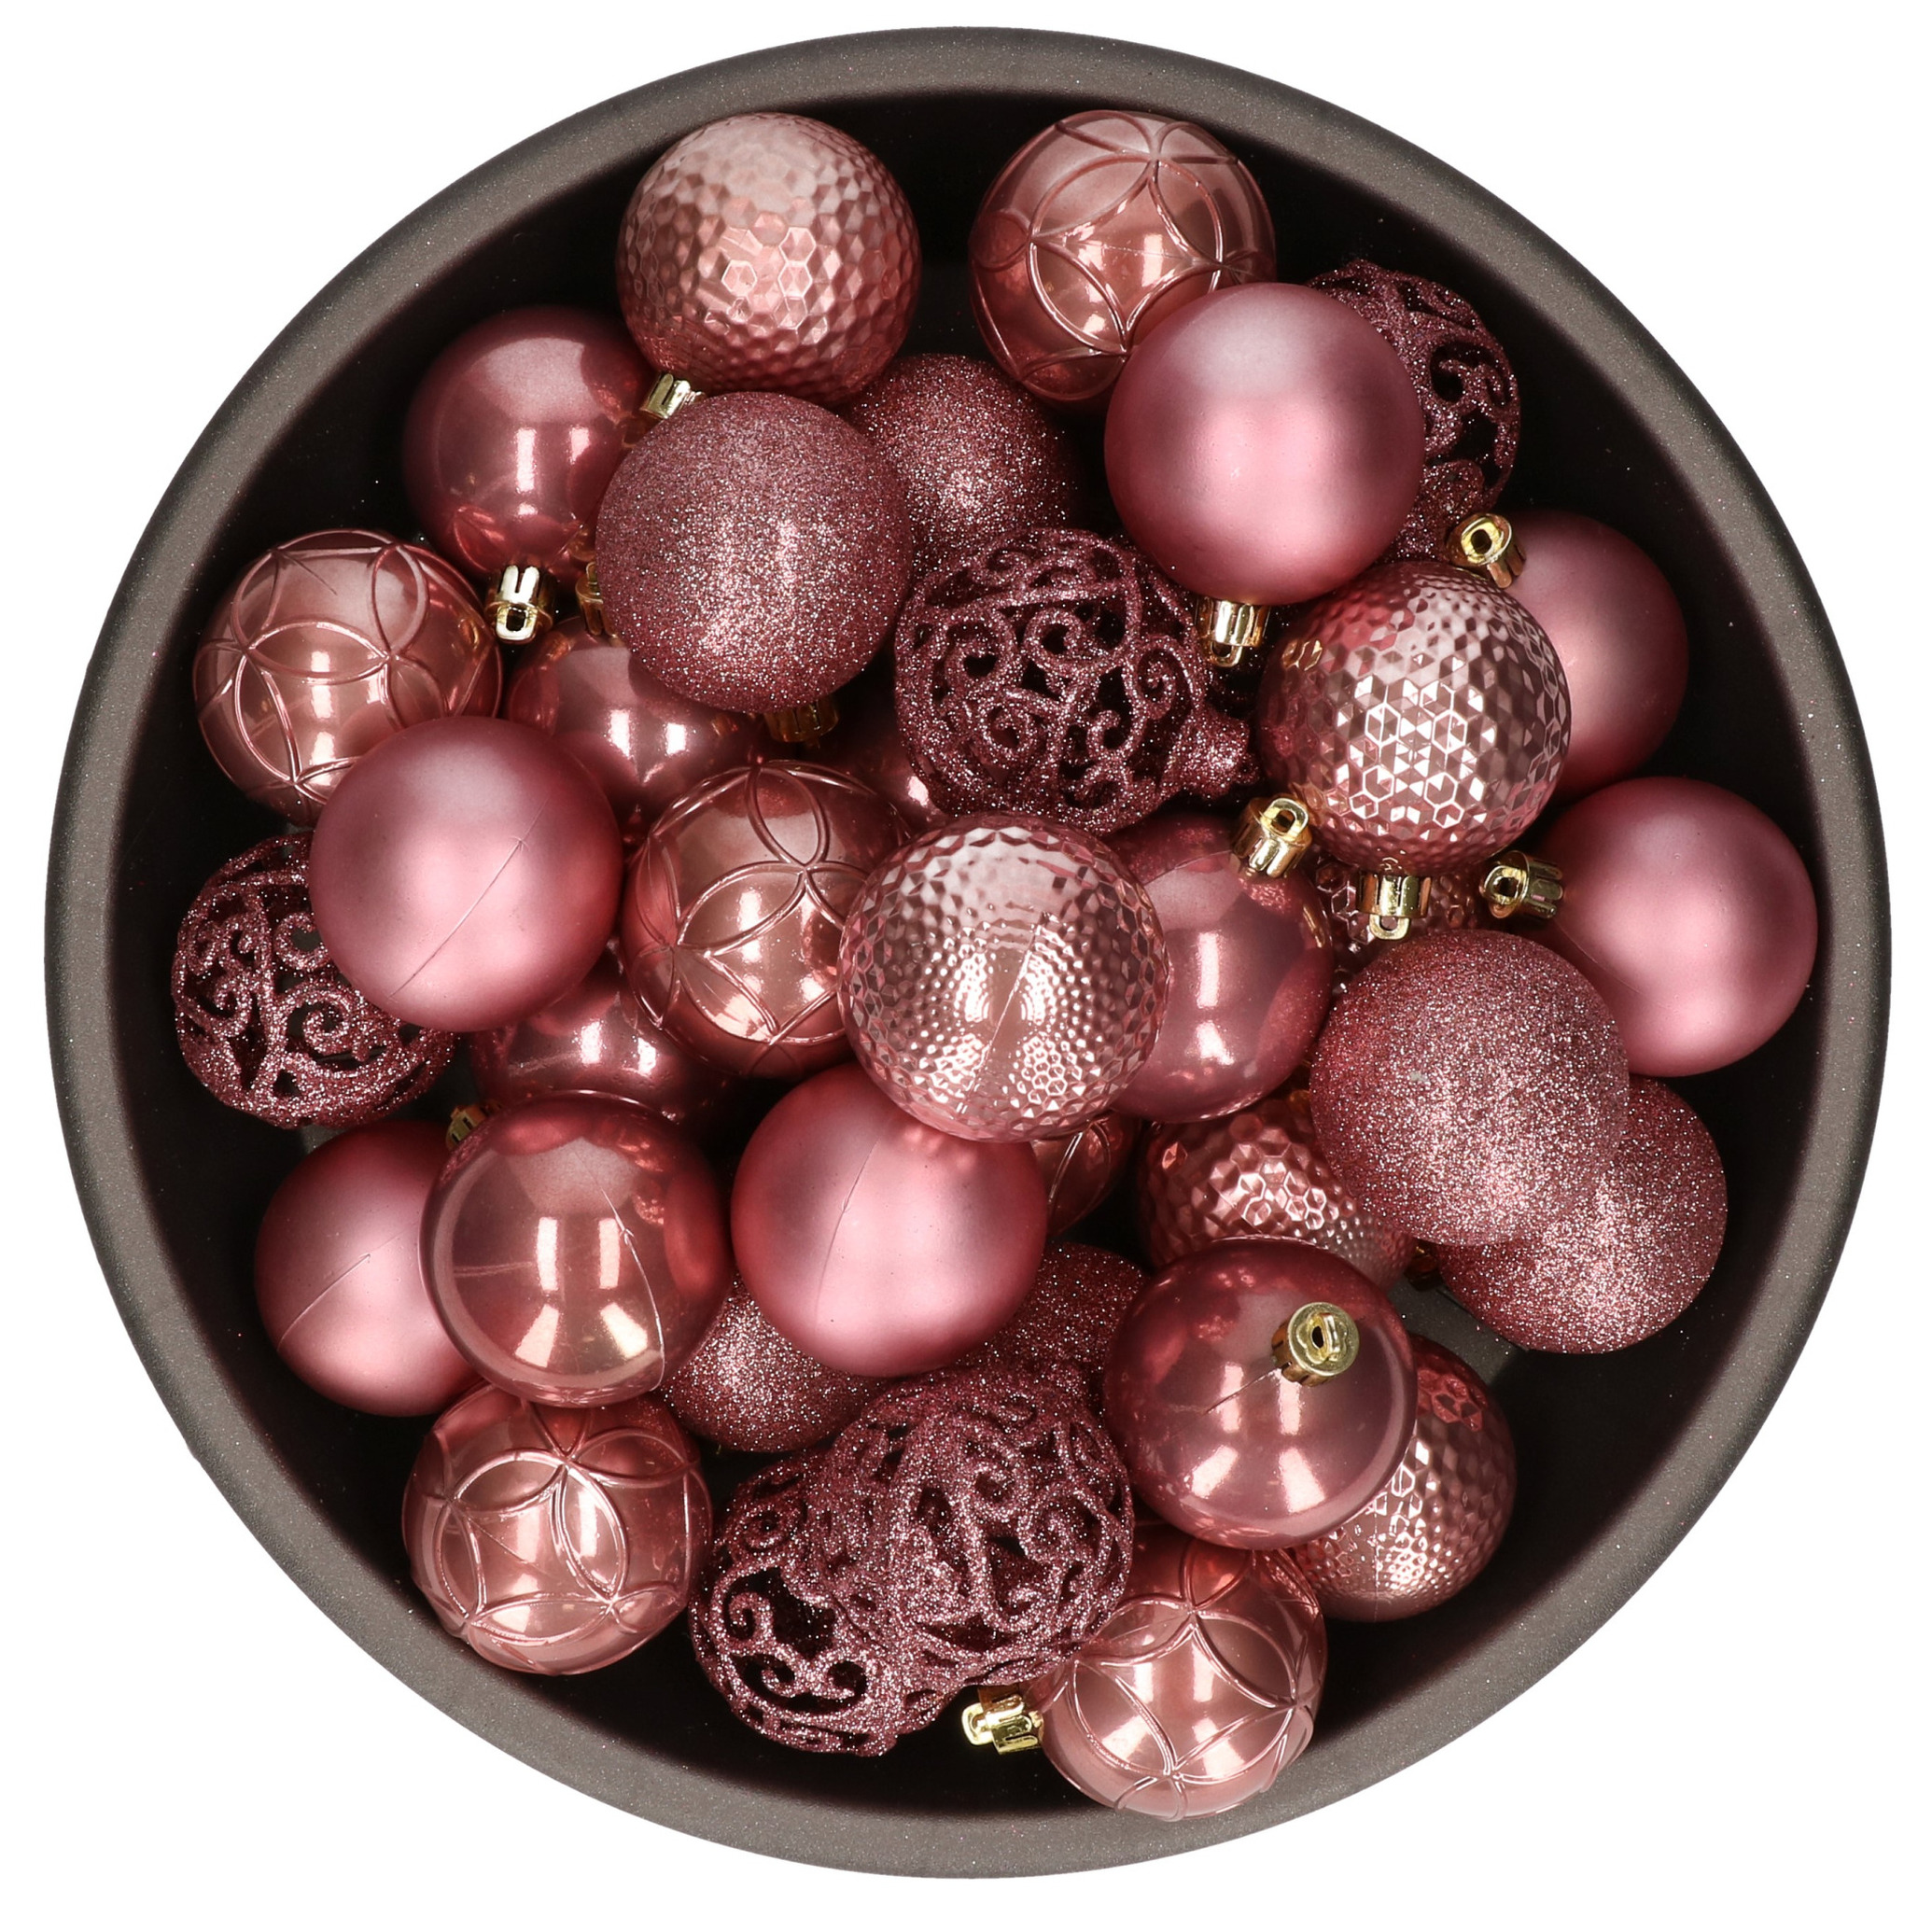 37x stuks kunststof kerstballen oudroze (velvet pink) 6 cm glans-mat-glitter mix